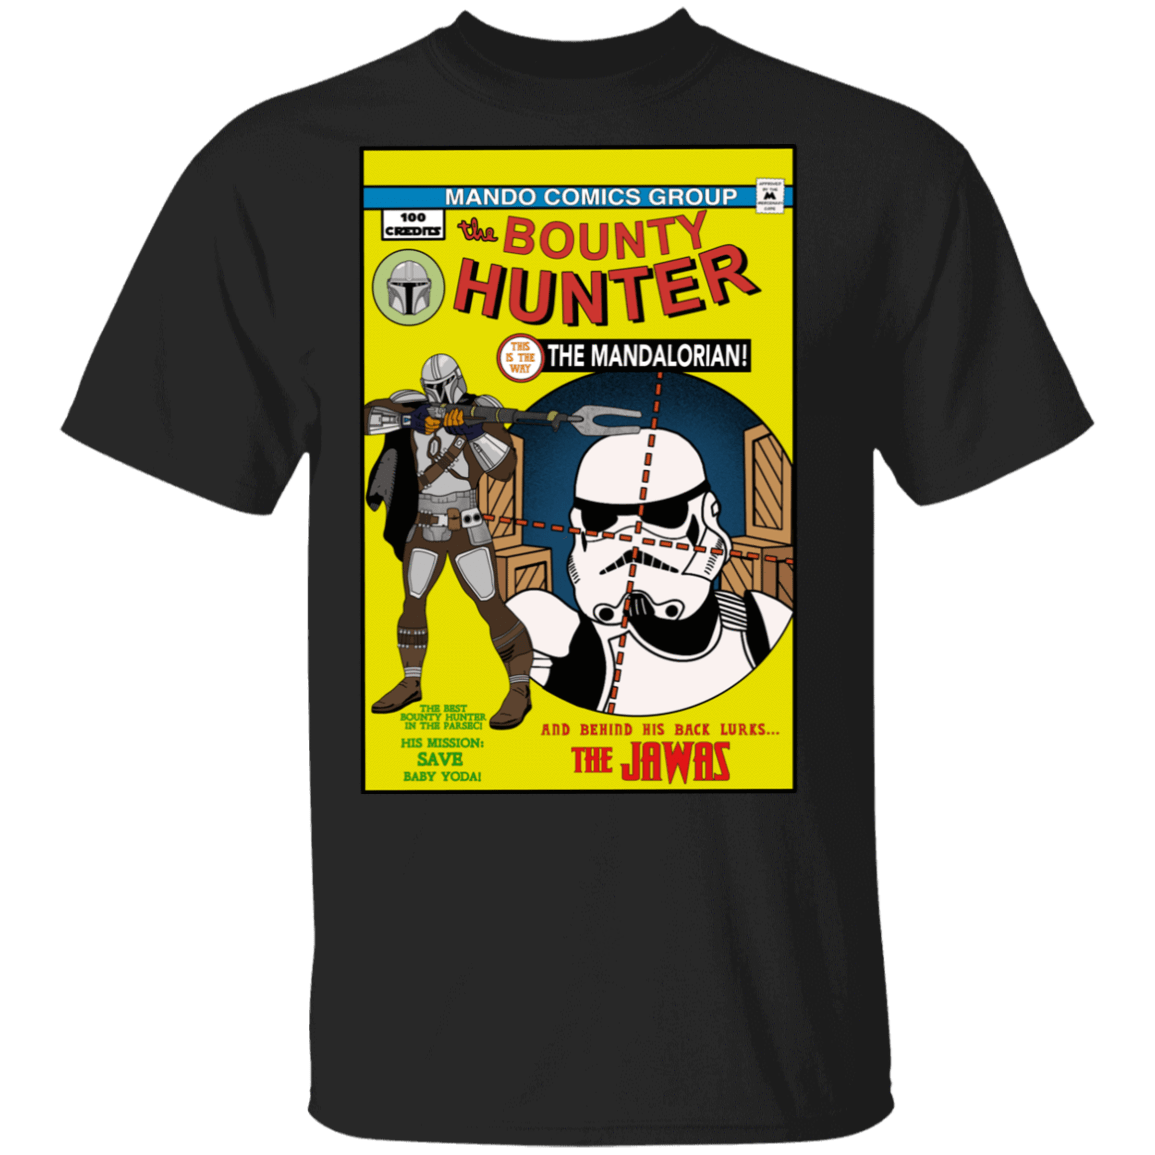 T-Shirts Black / S The Bounty Hunter Comic T-Shirt